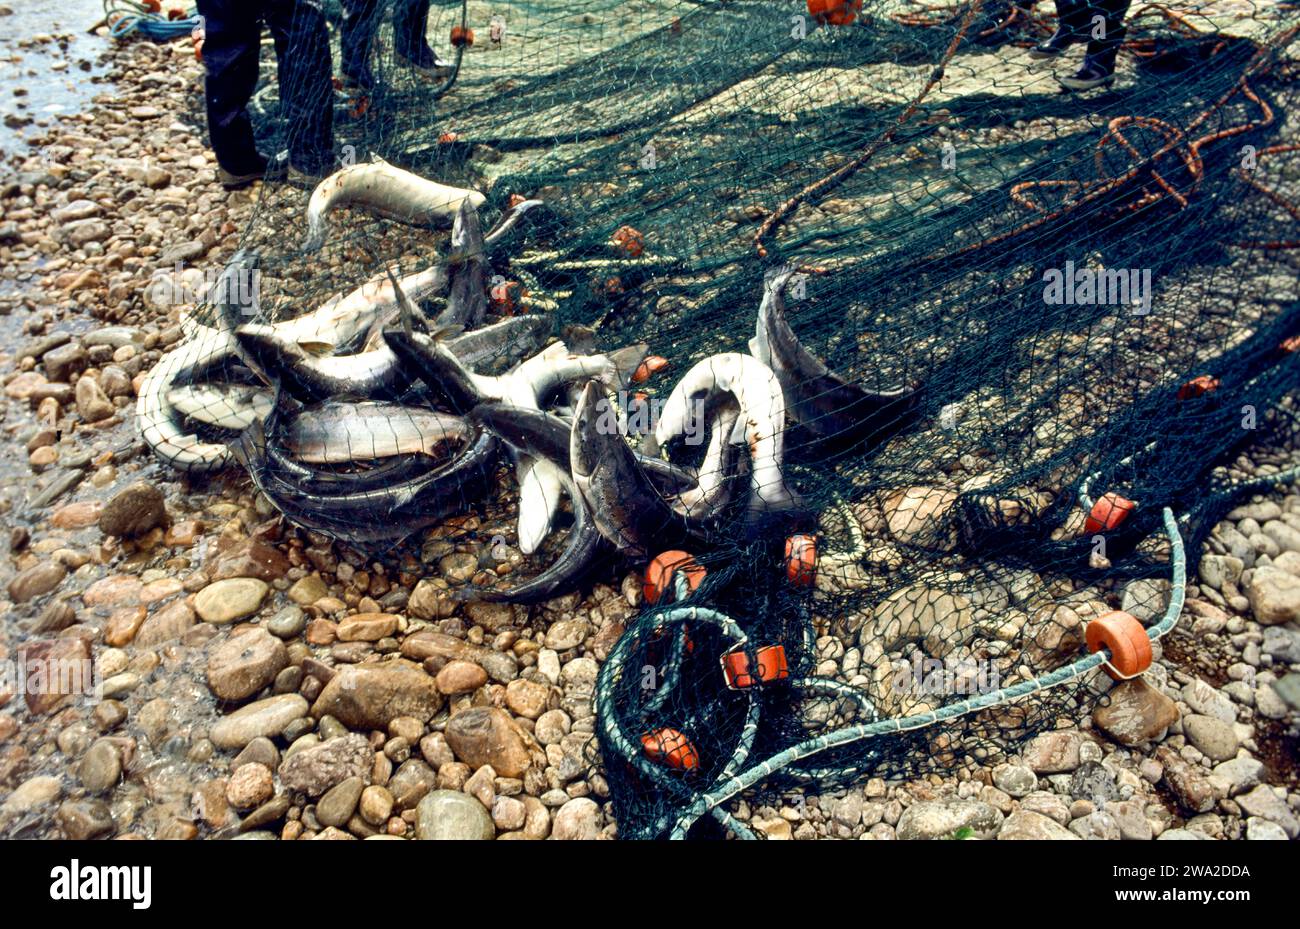 Redes de salmón River Spey Scotland durante la década de 1990 peces recién desembarcados luchando en la red Foto de stock